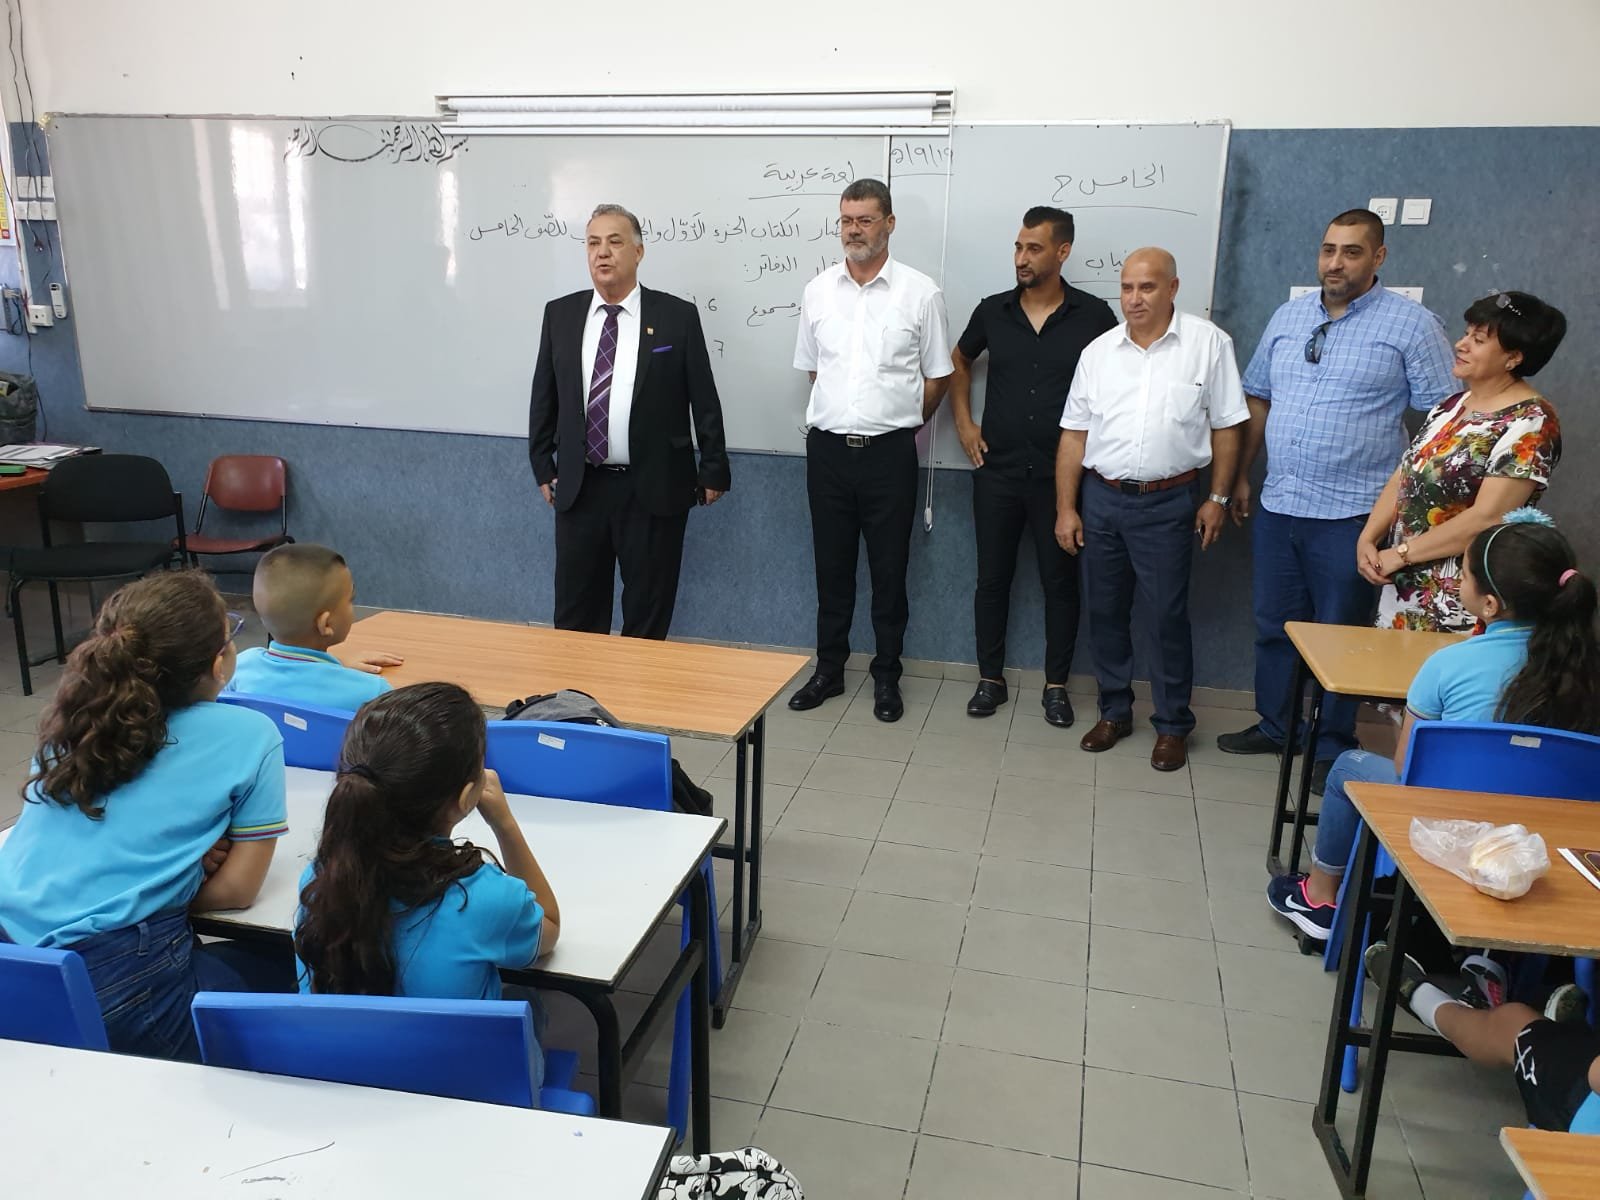 رئيس بلدية الناصرة علي سلام وادارته يتفقدون مدارس الناصرة -5